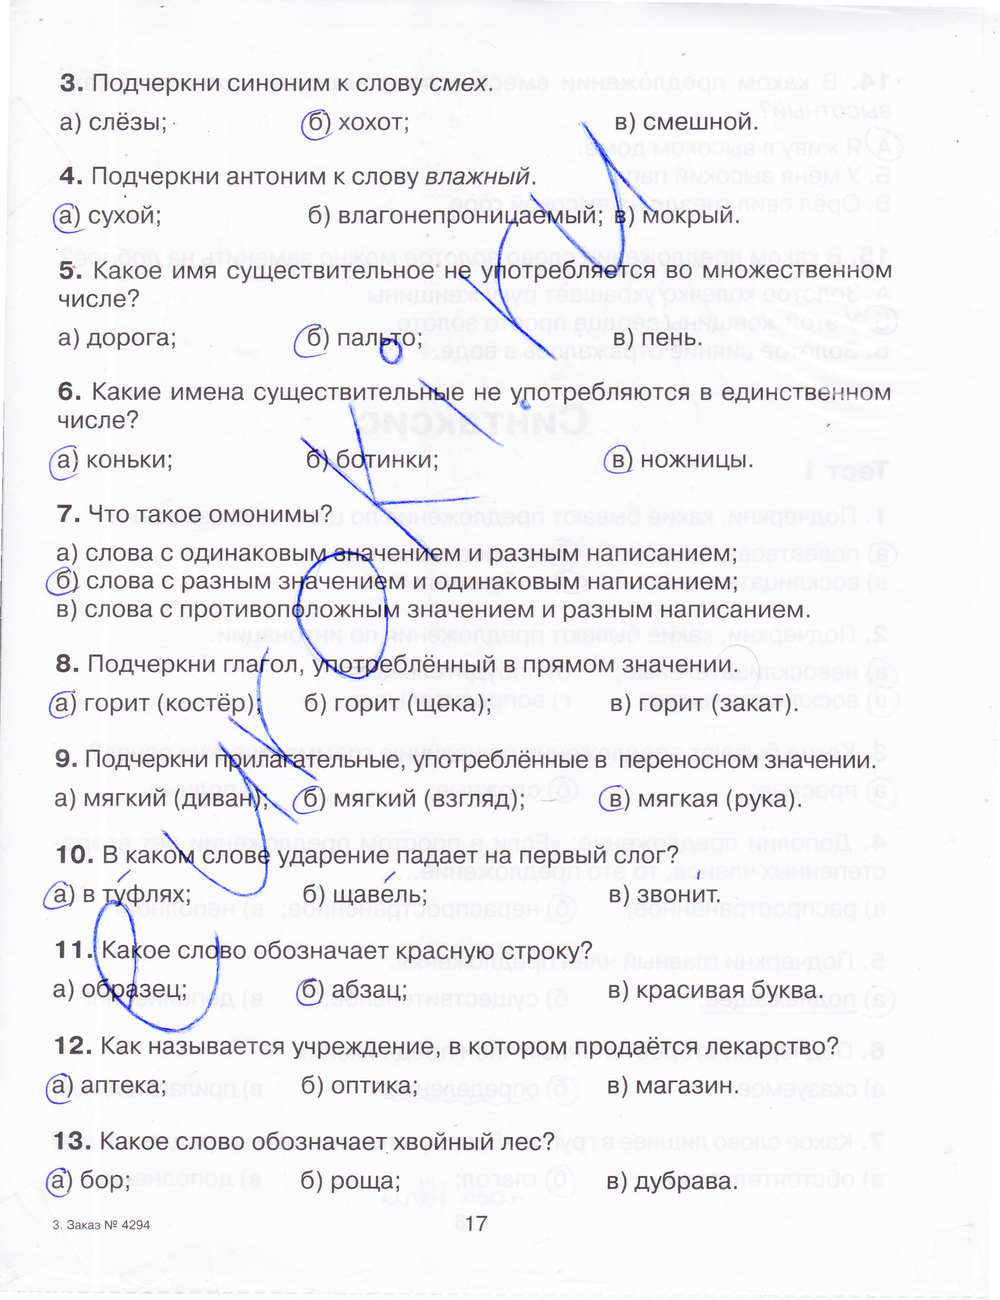 Тренажер русский язык 4 класс шклярова ответы. Русский язык тренажер 4 класс ответы. Тренажёр по русскому языку 4 класс ответы.